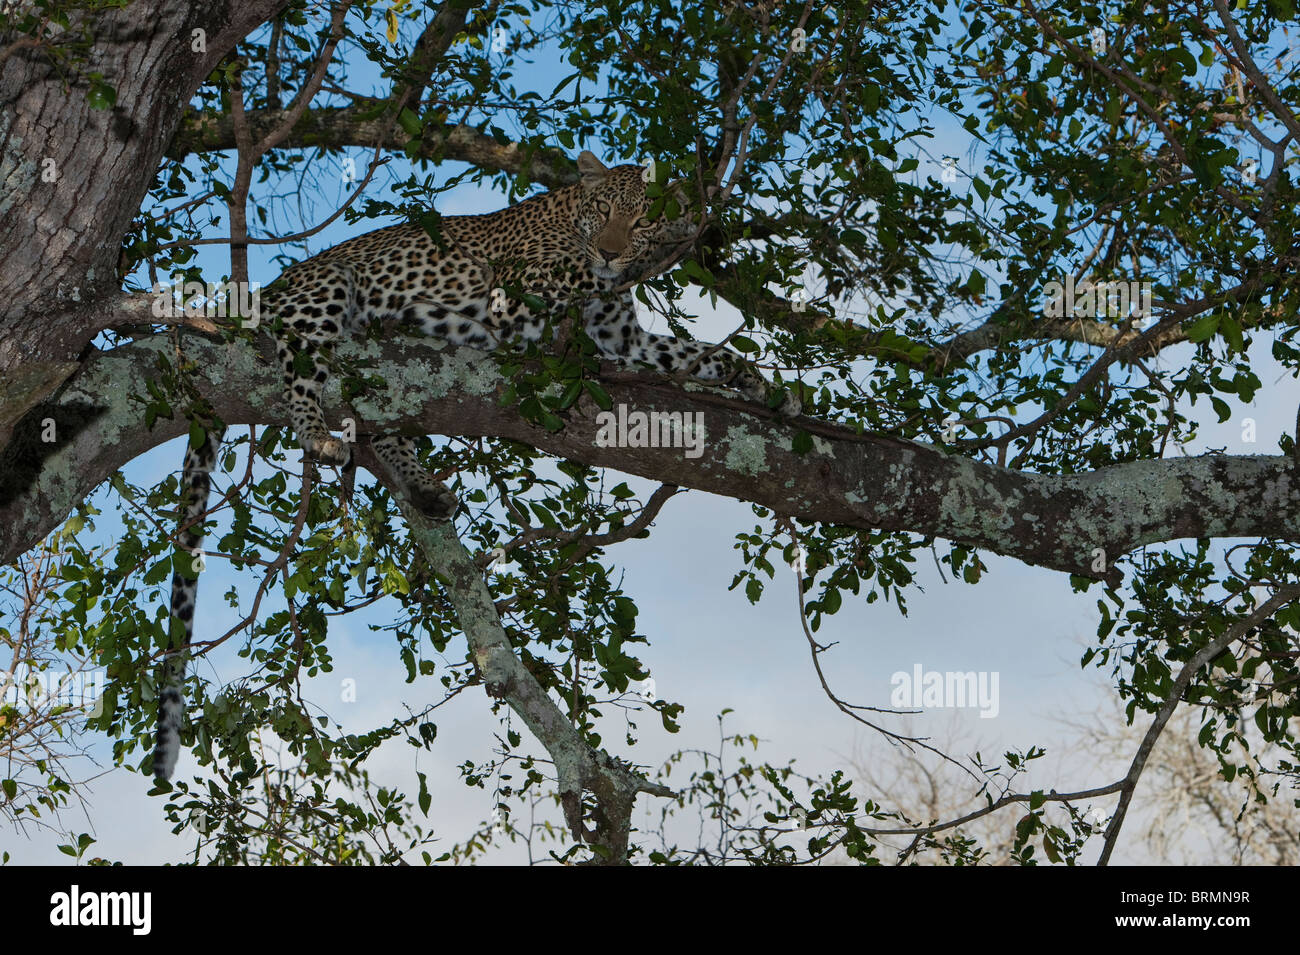 Vue de dessous d'un Léopard allongé sur une branche entre le feuillage Banque D'Images